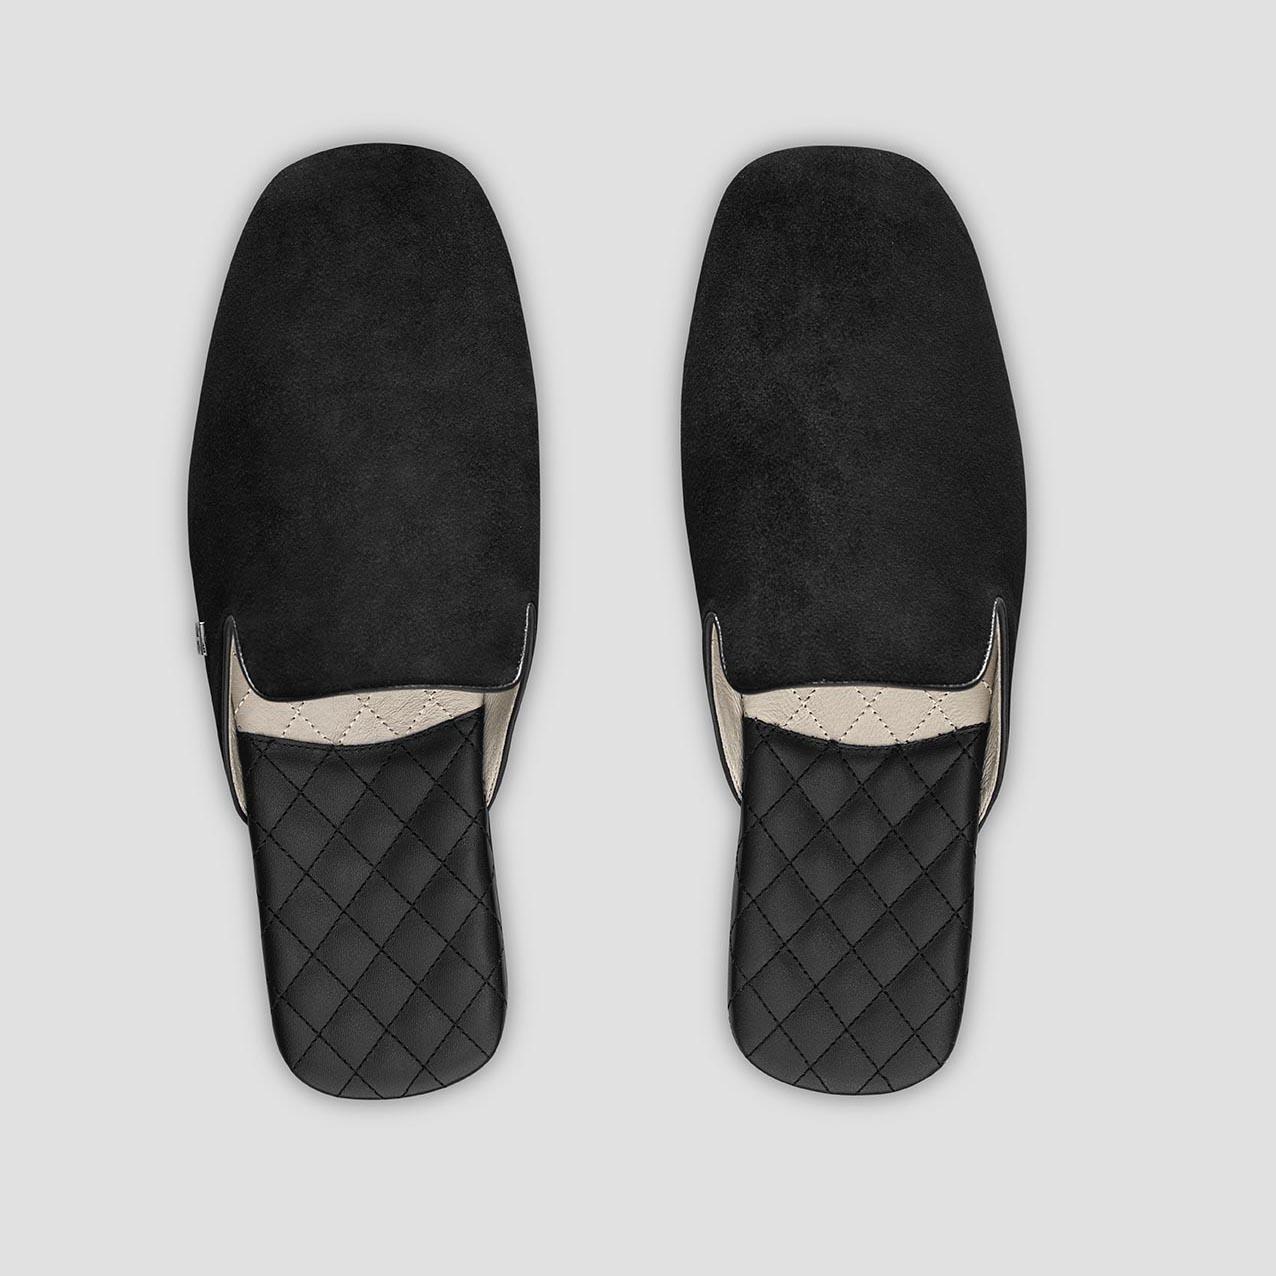 тапочки togas реон черные мужские кожаные размер 40 41 Тапочки Togas Реон черные мужские кожаные, размер 40-41